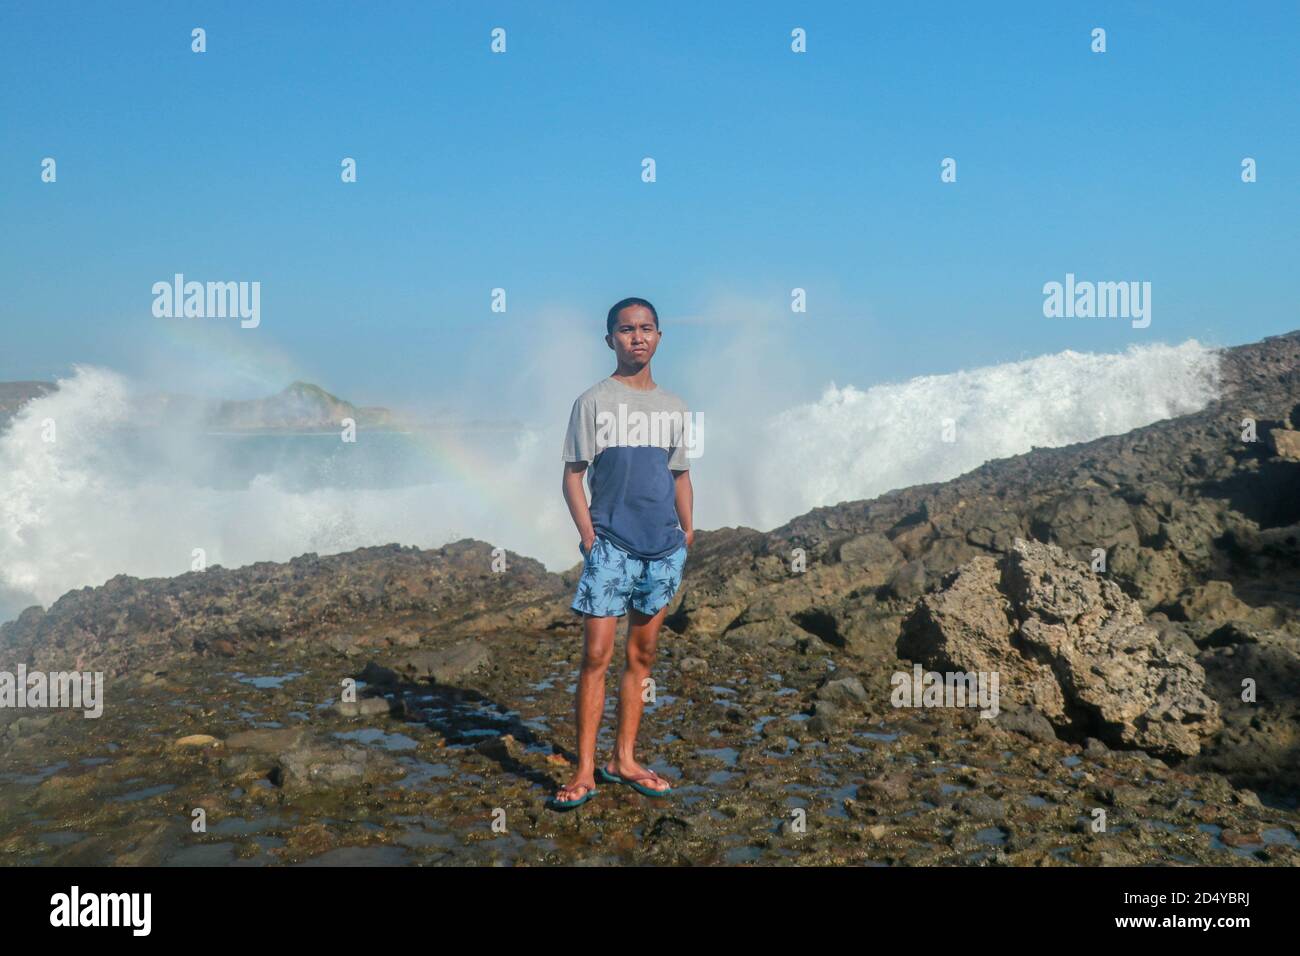 Vagues heurtant des rochers ronds et éclaboussant. Un jeune homme se tient sur une côte rocheuse et les vagues s'écrasont contre une falaise Banque D'Images